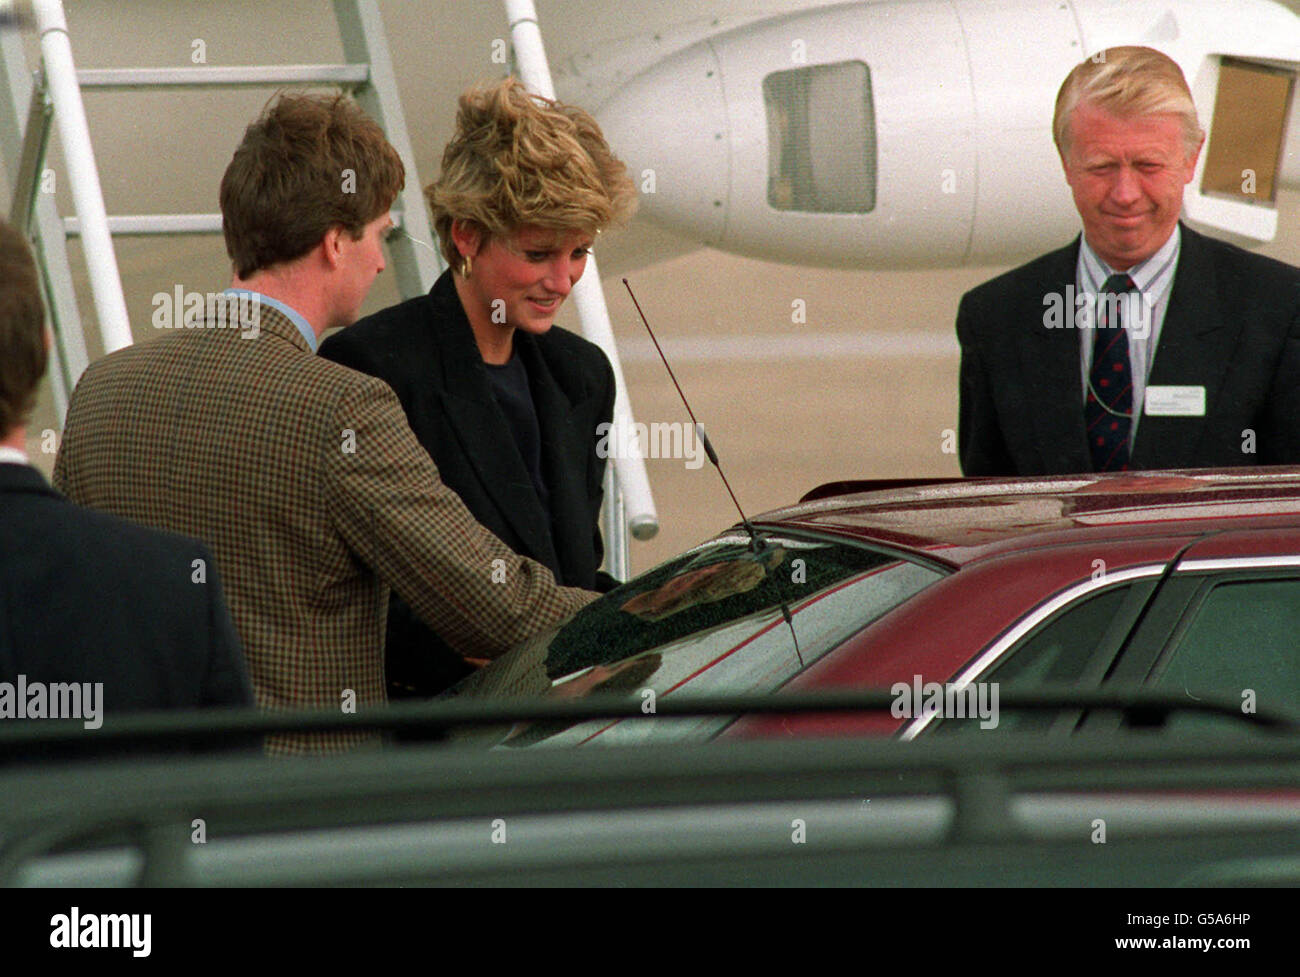 1992: Eine lächelnde Prinzessin von Wales, die aus Aberdeen am Flughafen Heathrow ankommt. (Bild veröffentlicht kurz nach den sogenannten 'Squidgygate' Enthüllungen in der Sonne 24/08/92). Stockfoto